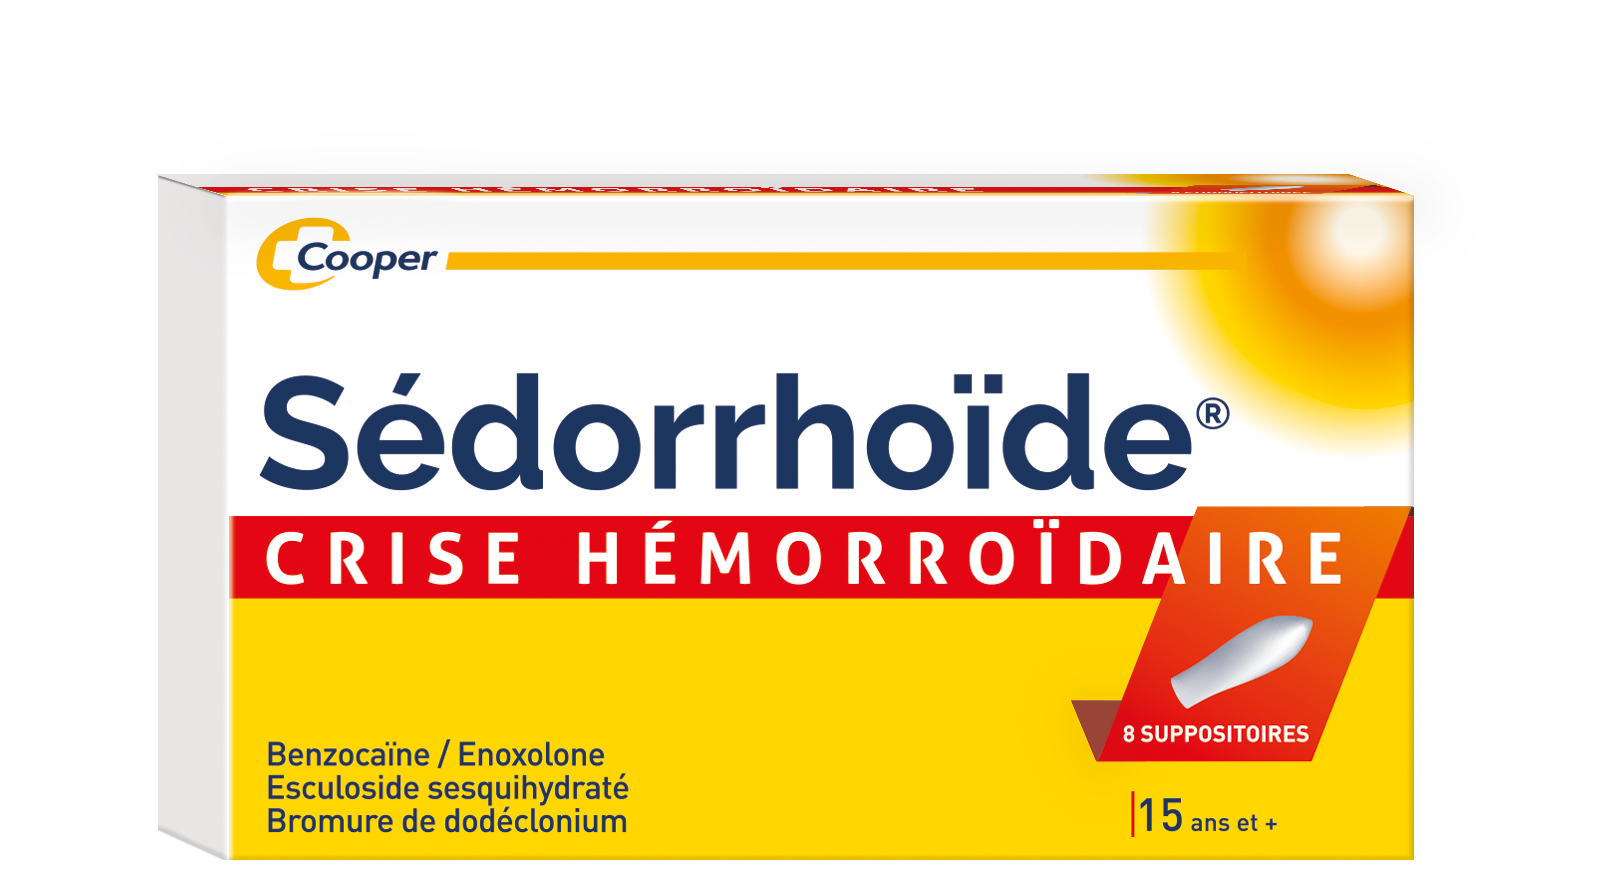 SEDORRHOIDE CRISE HEMORROIDAIRE, 8 suppositoires | Cooper